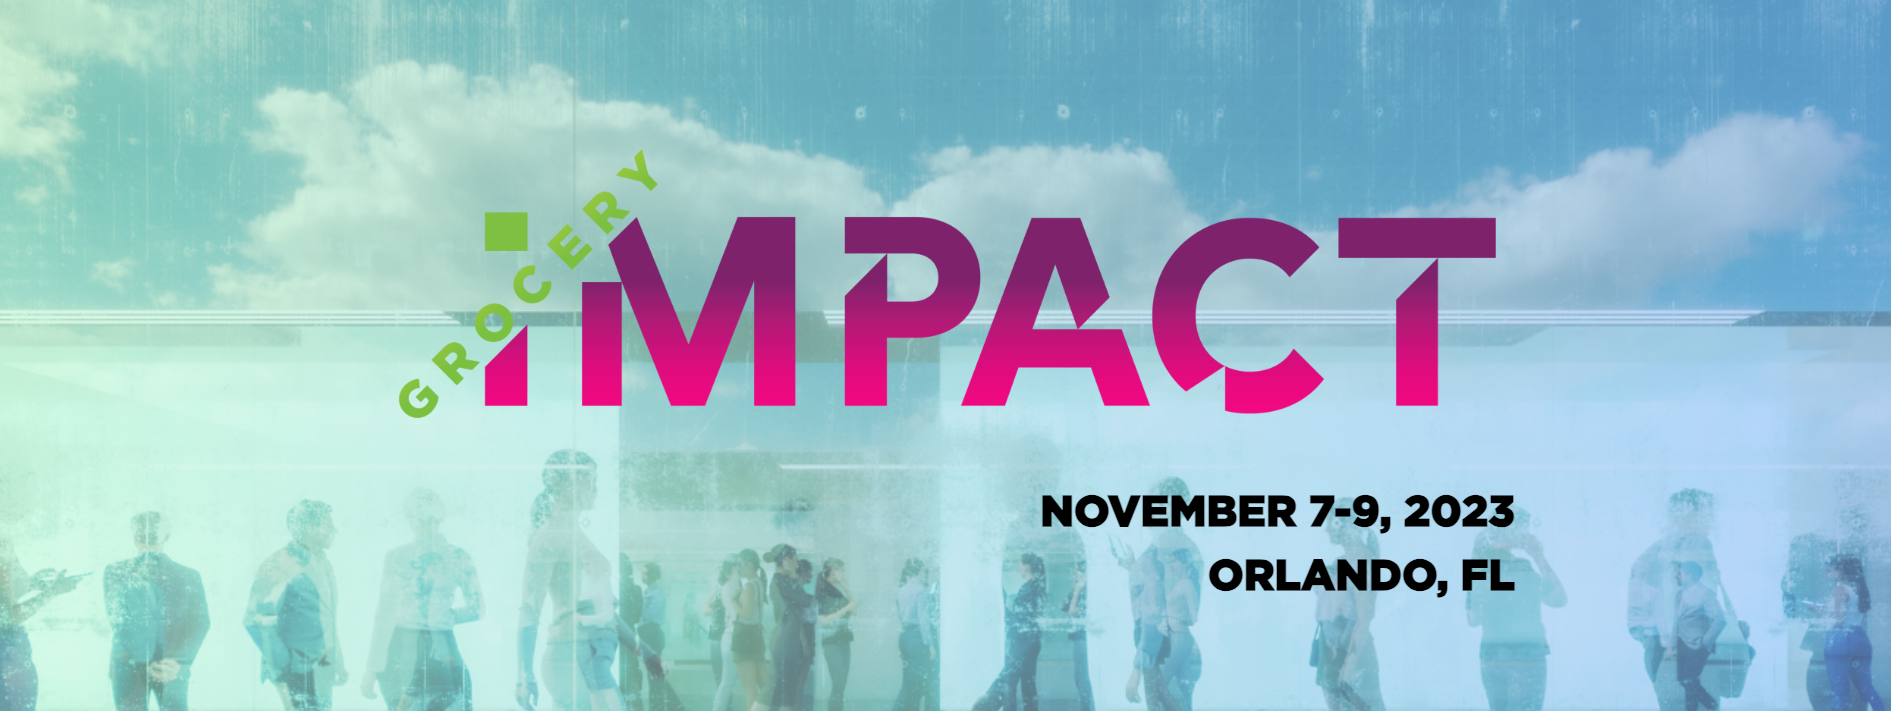 GroceryImpact: Nov 7-9, Orlando, FL